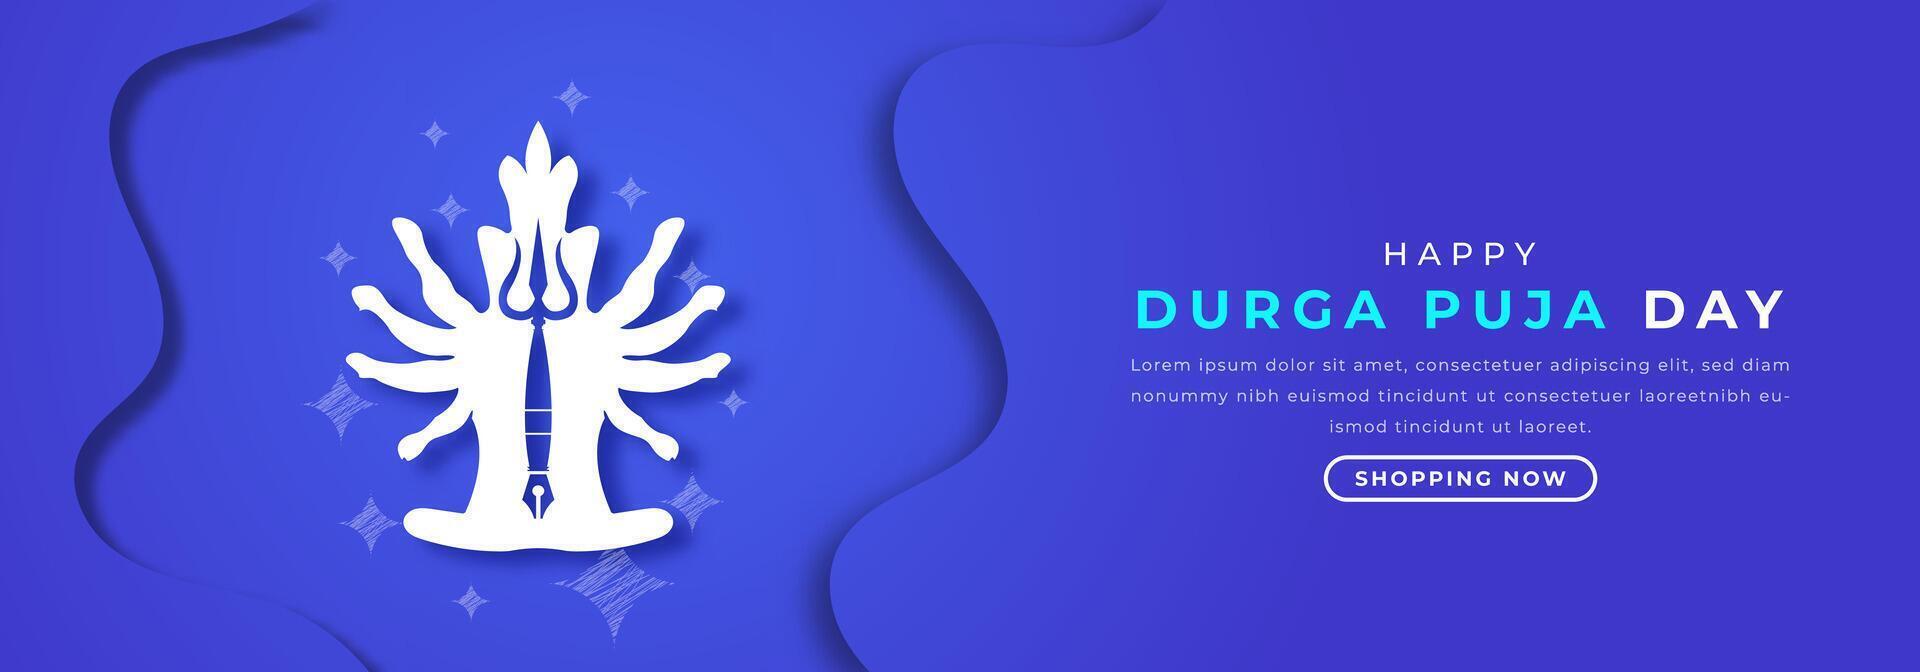 glücklich Durga Puja Tag Papier Schnitt Stil Vektor Design Illustration zum Hintergrund, Poster, Banner, Werbung, Gruß Karte